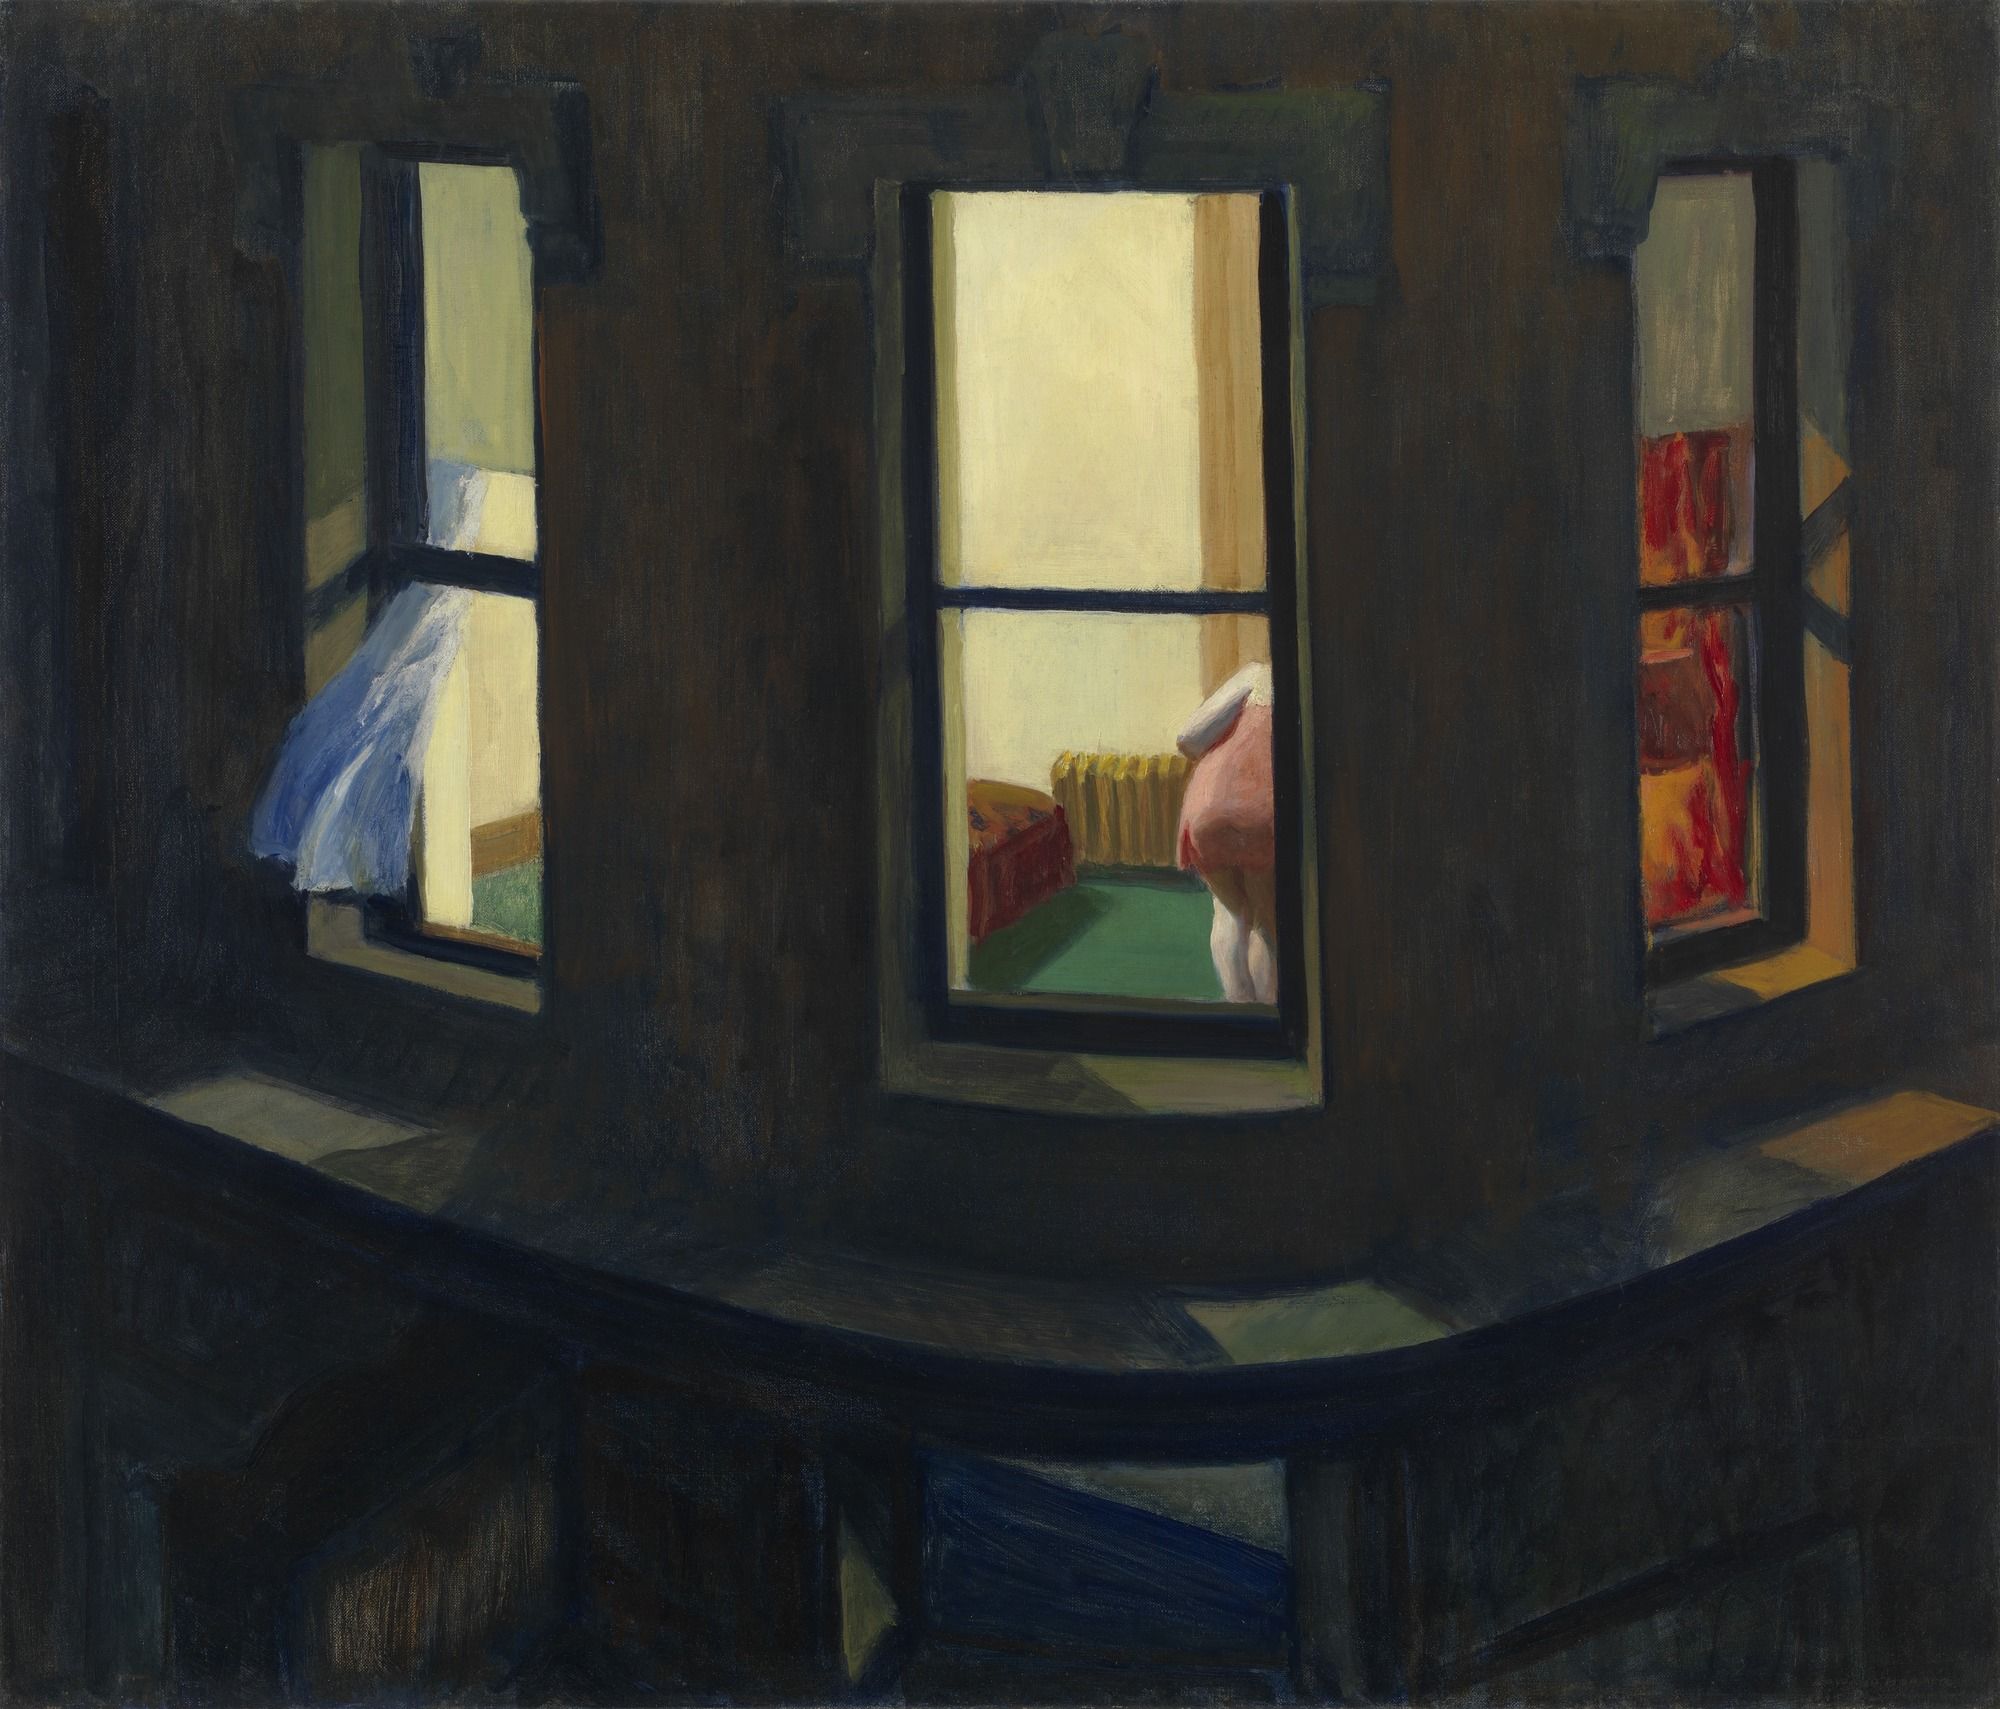 Fereastra de noapte by Edward Hopper - 1928 - 74 x 86 cm 